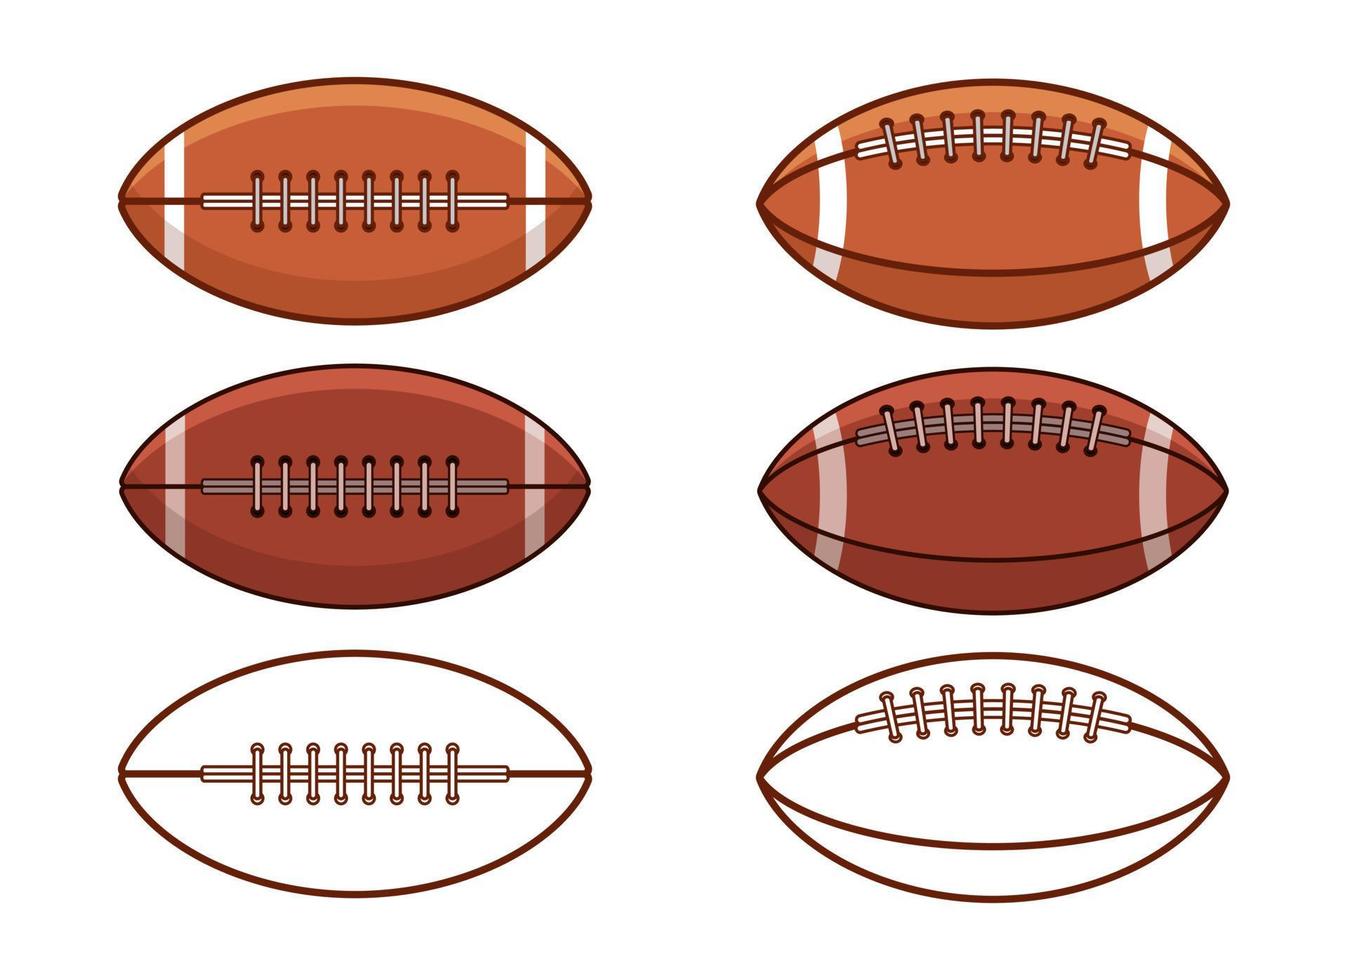 Vektordesignillustration des amerikanischen Fußballs lokalisiert auf weißem Hintergrund vektor